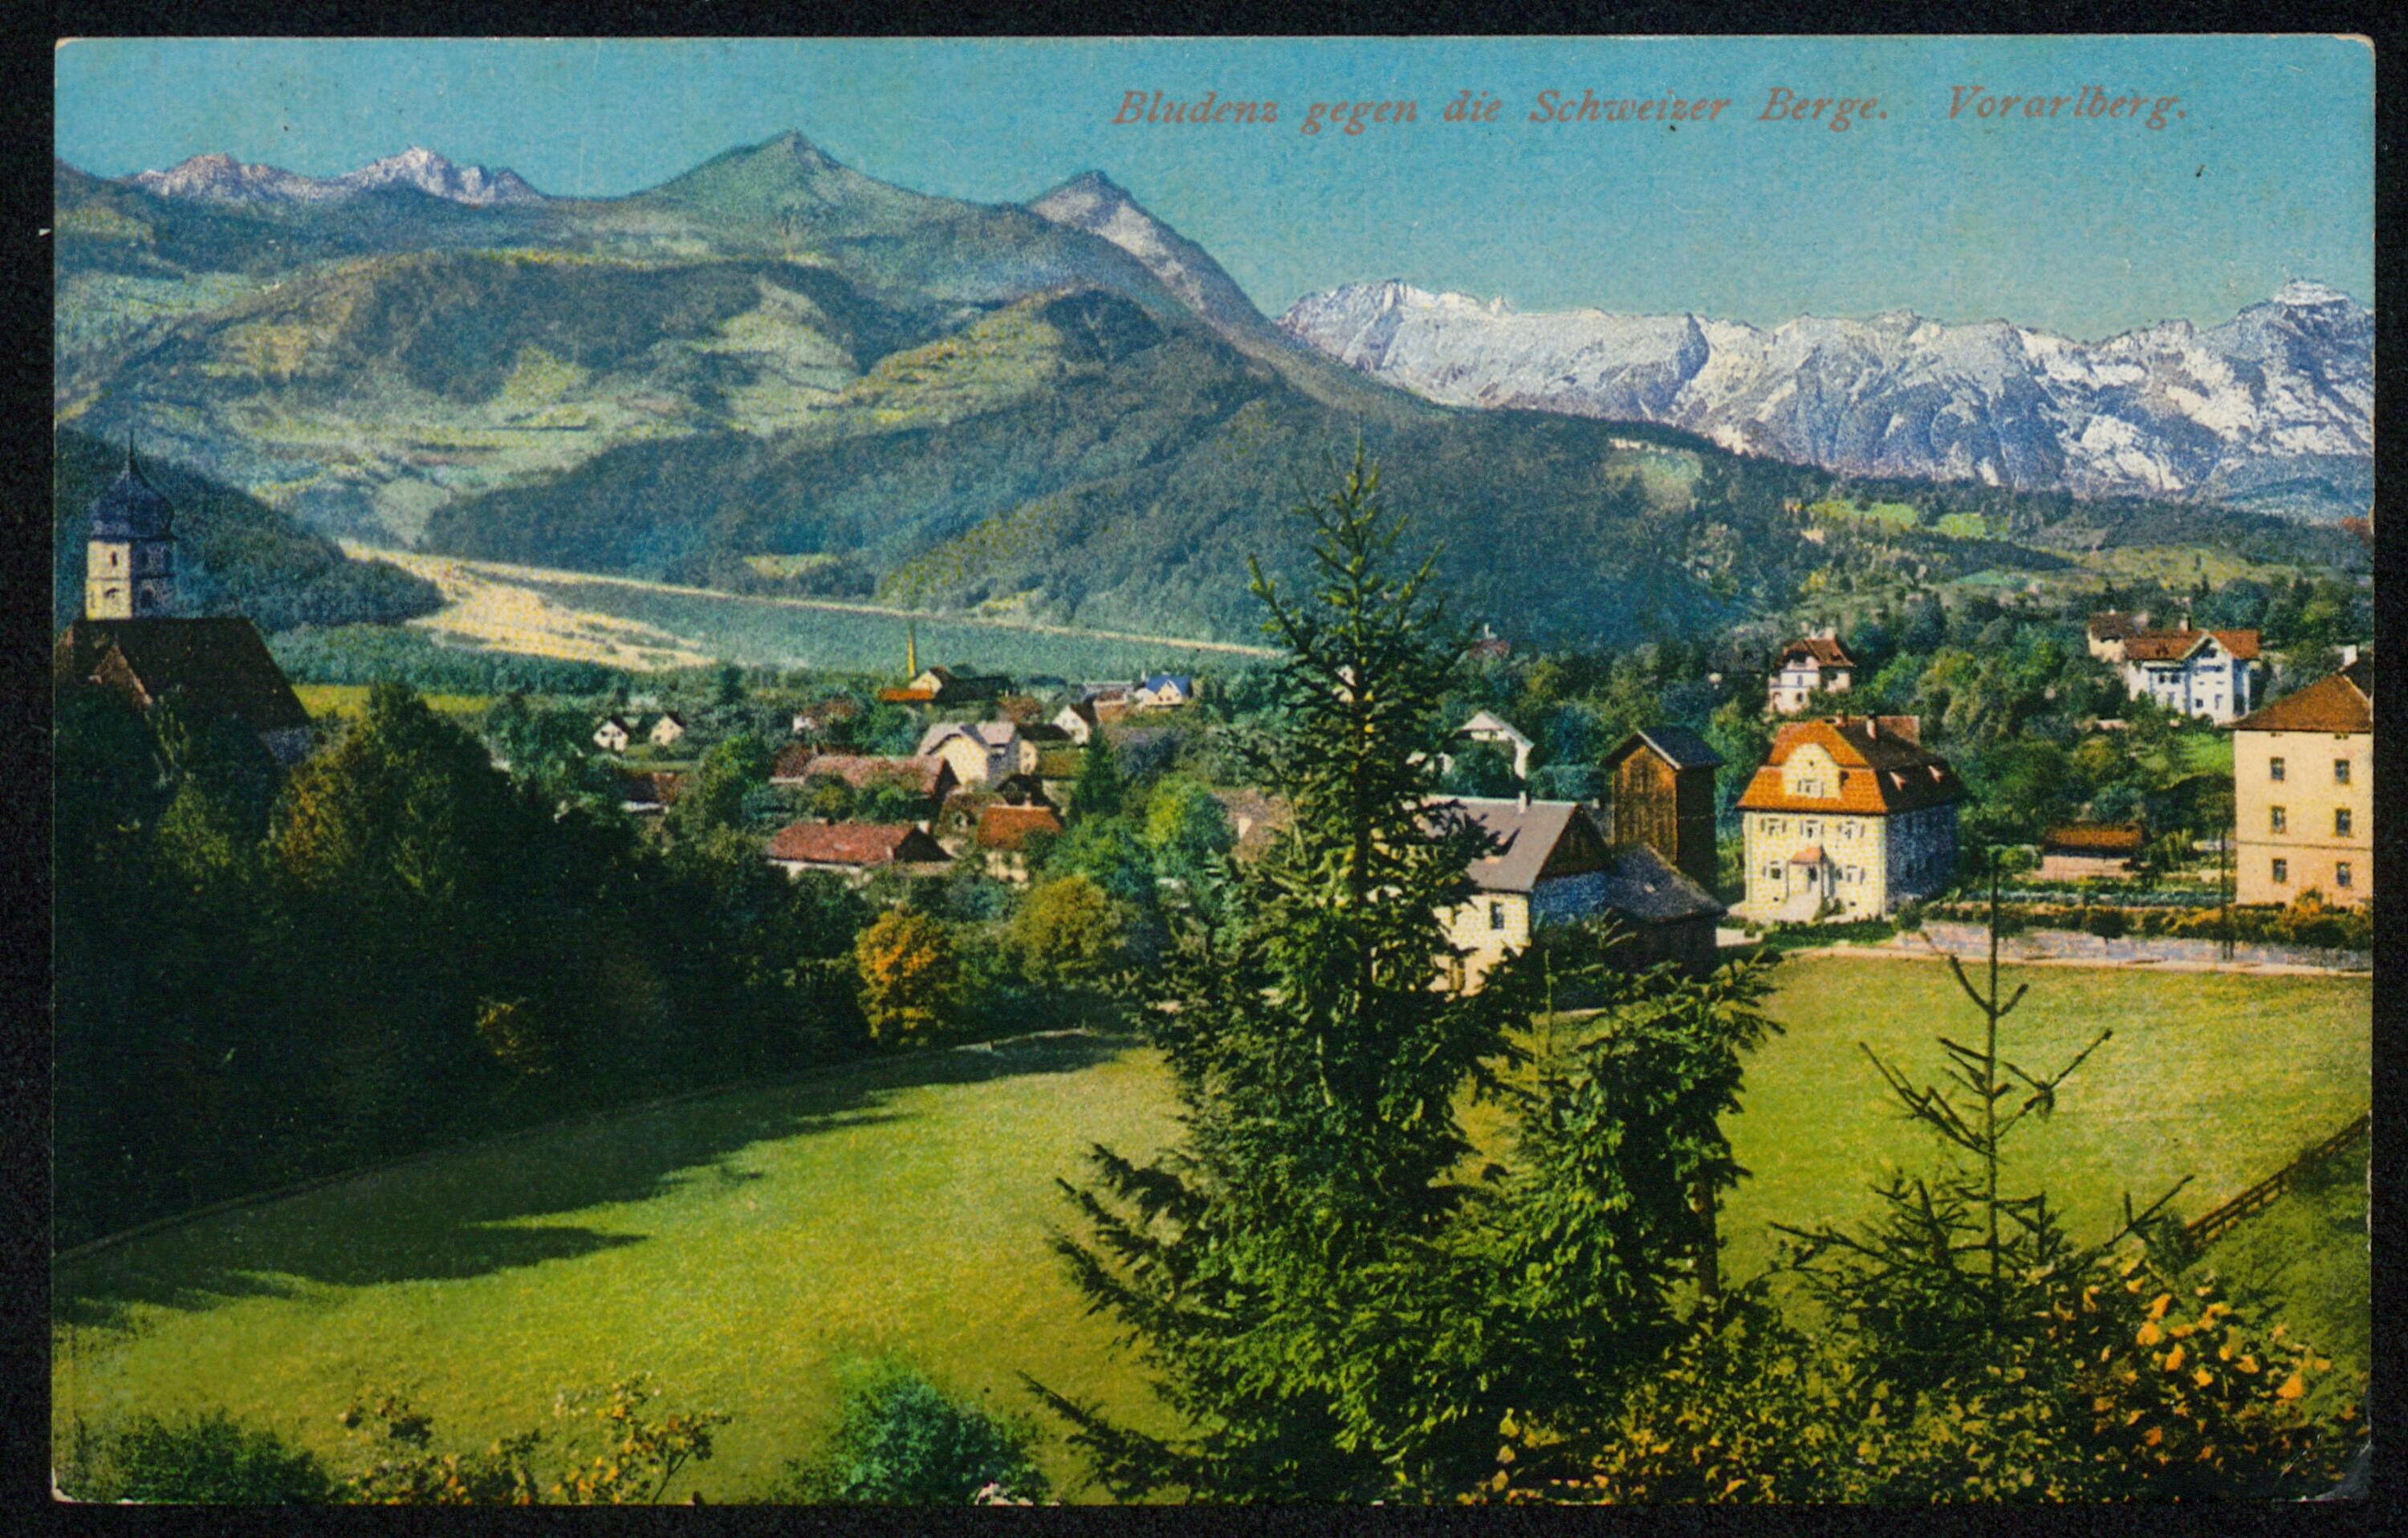 Bludenz gegen die Schweizer Berge Vorarlberg></div>


    <hr>
    <div class=